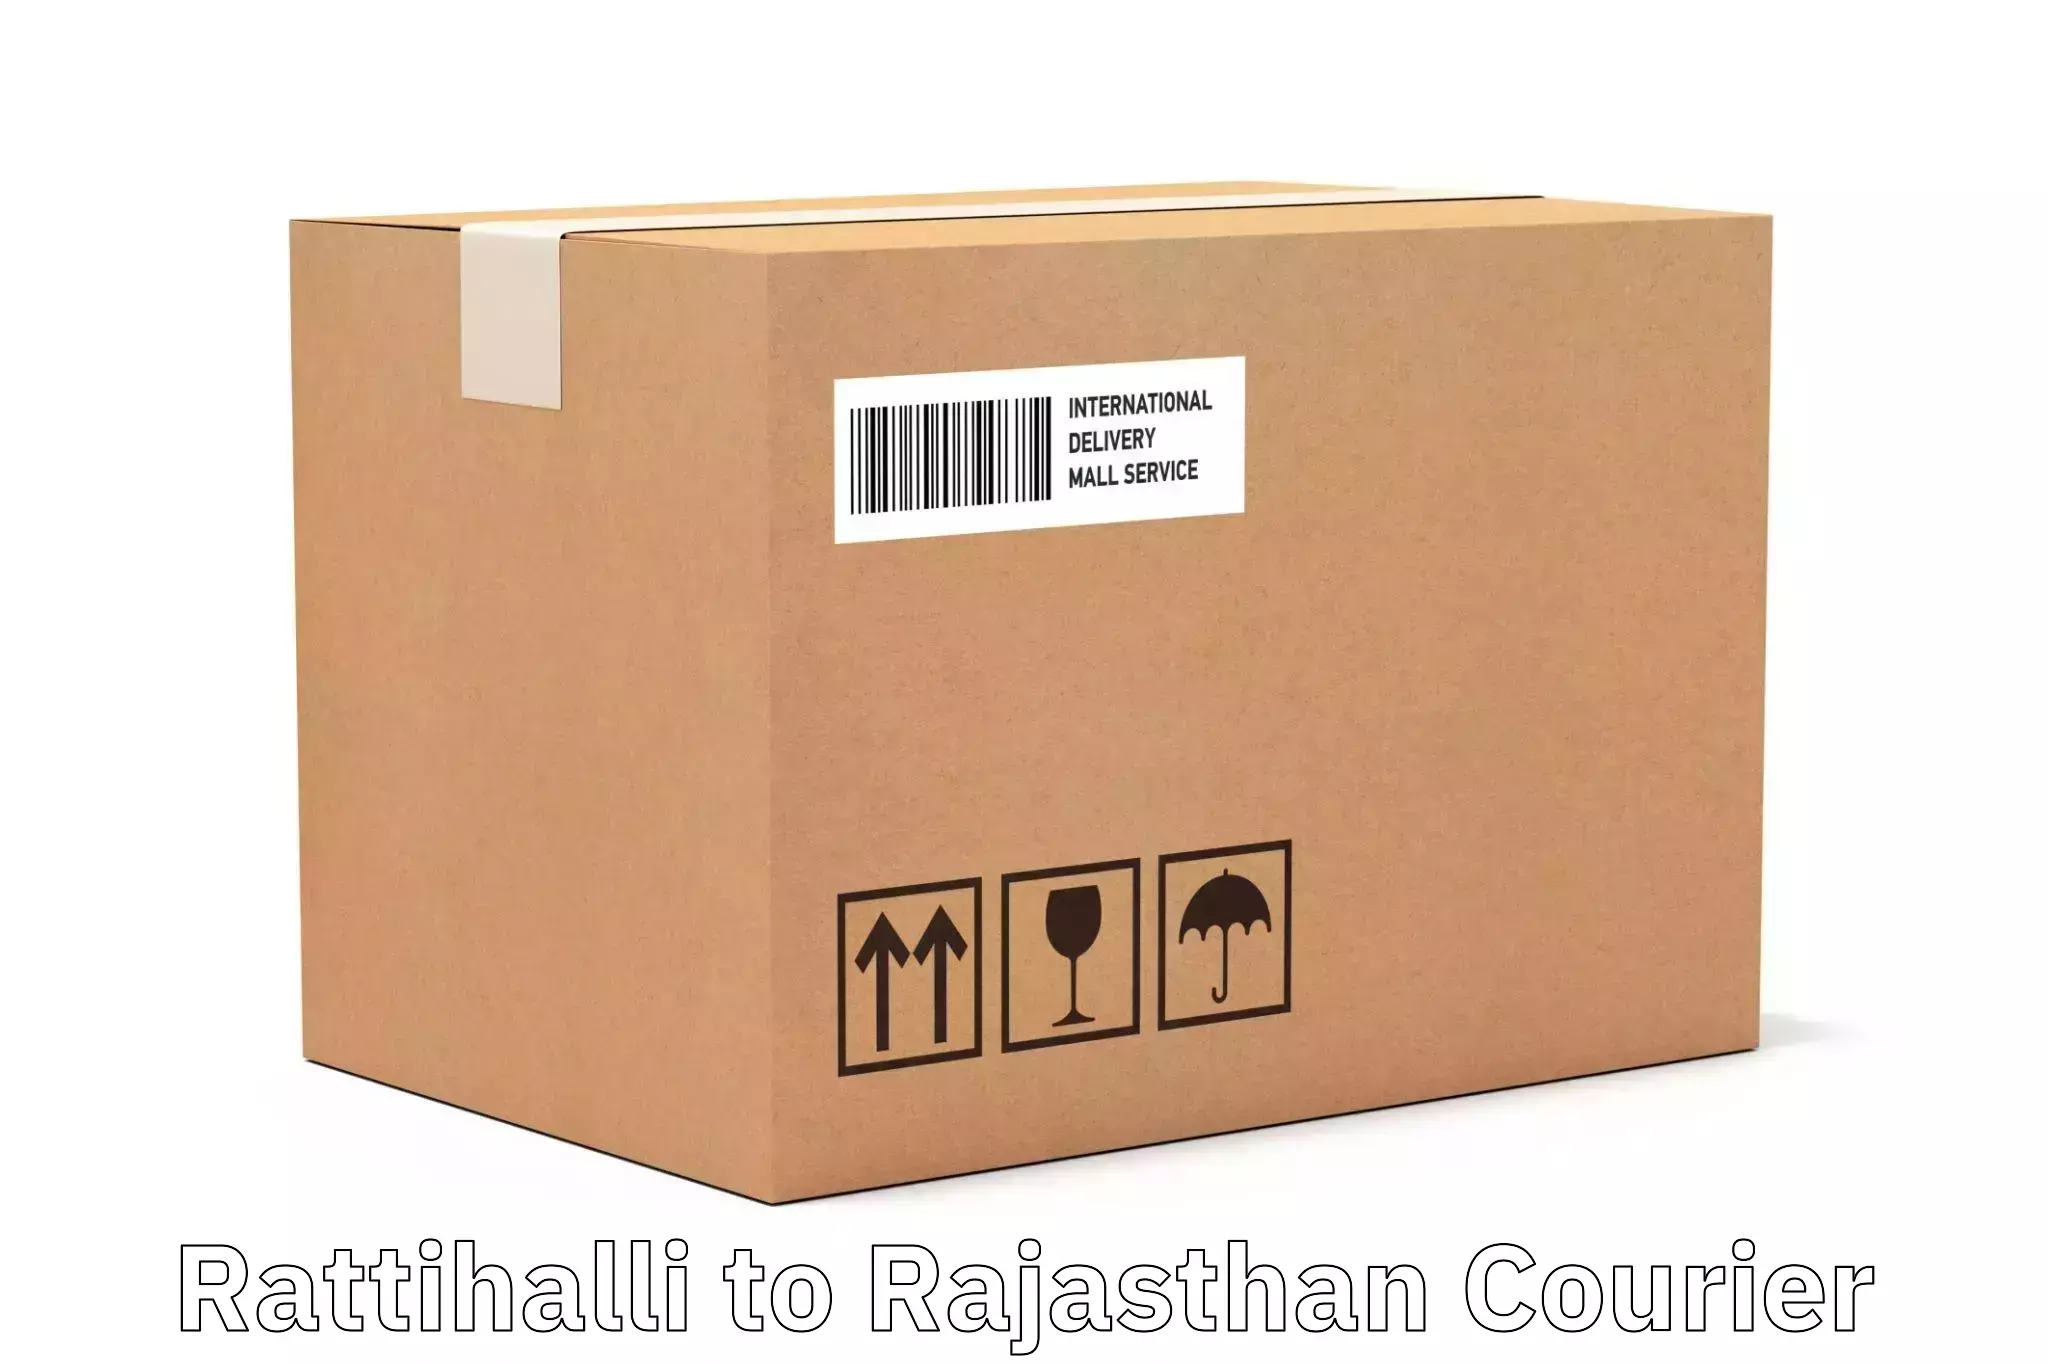 Cargo delivery service Rattihalli to Raila